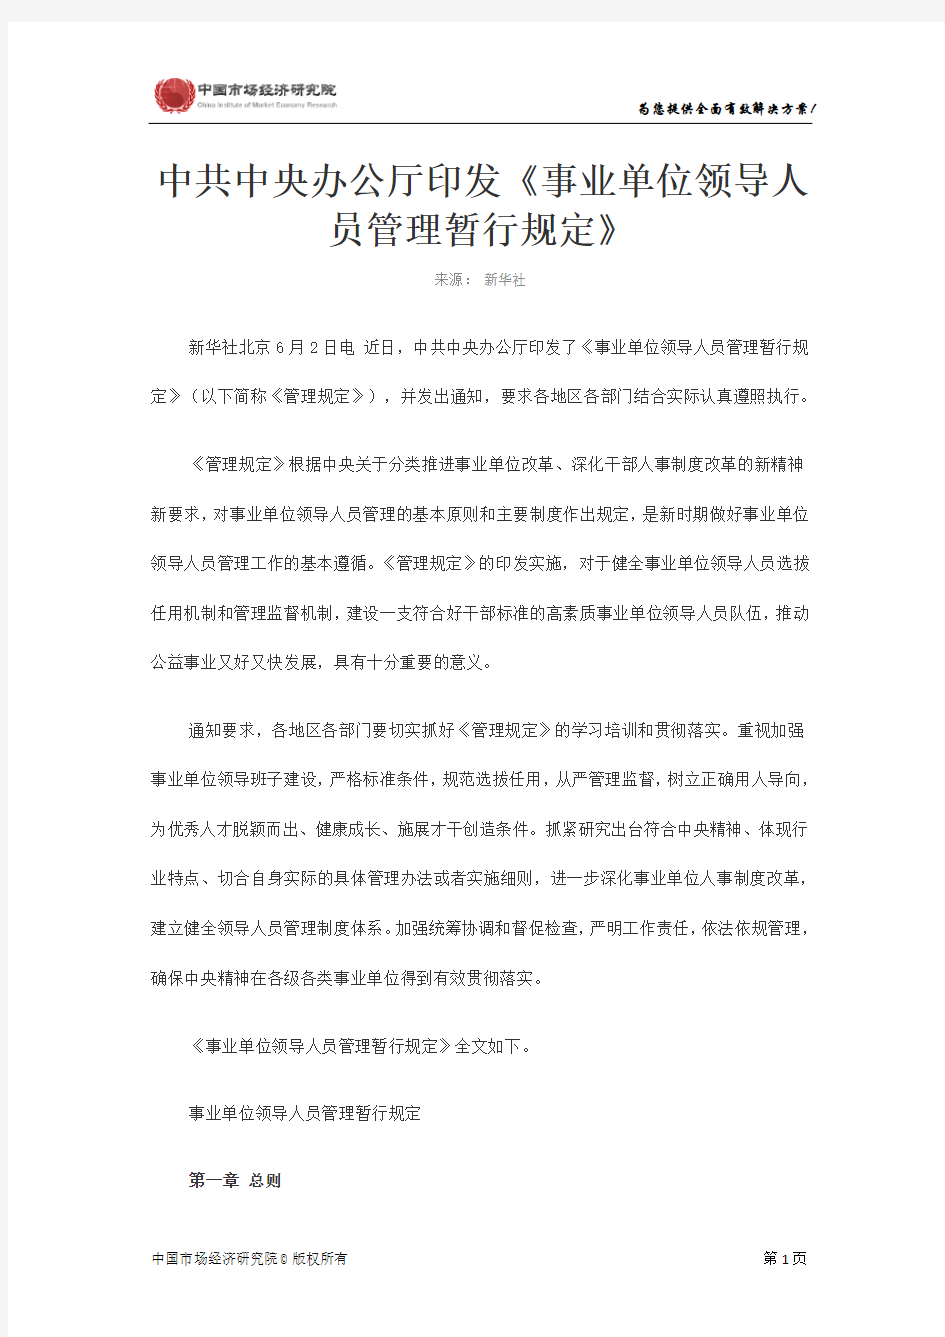 中共中央办公厅印发《事业单位领导人员管理暂行规定》